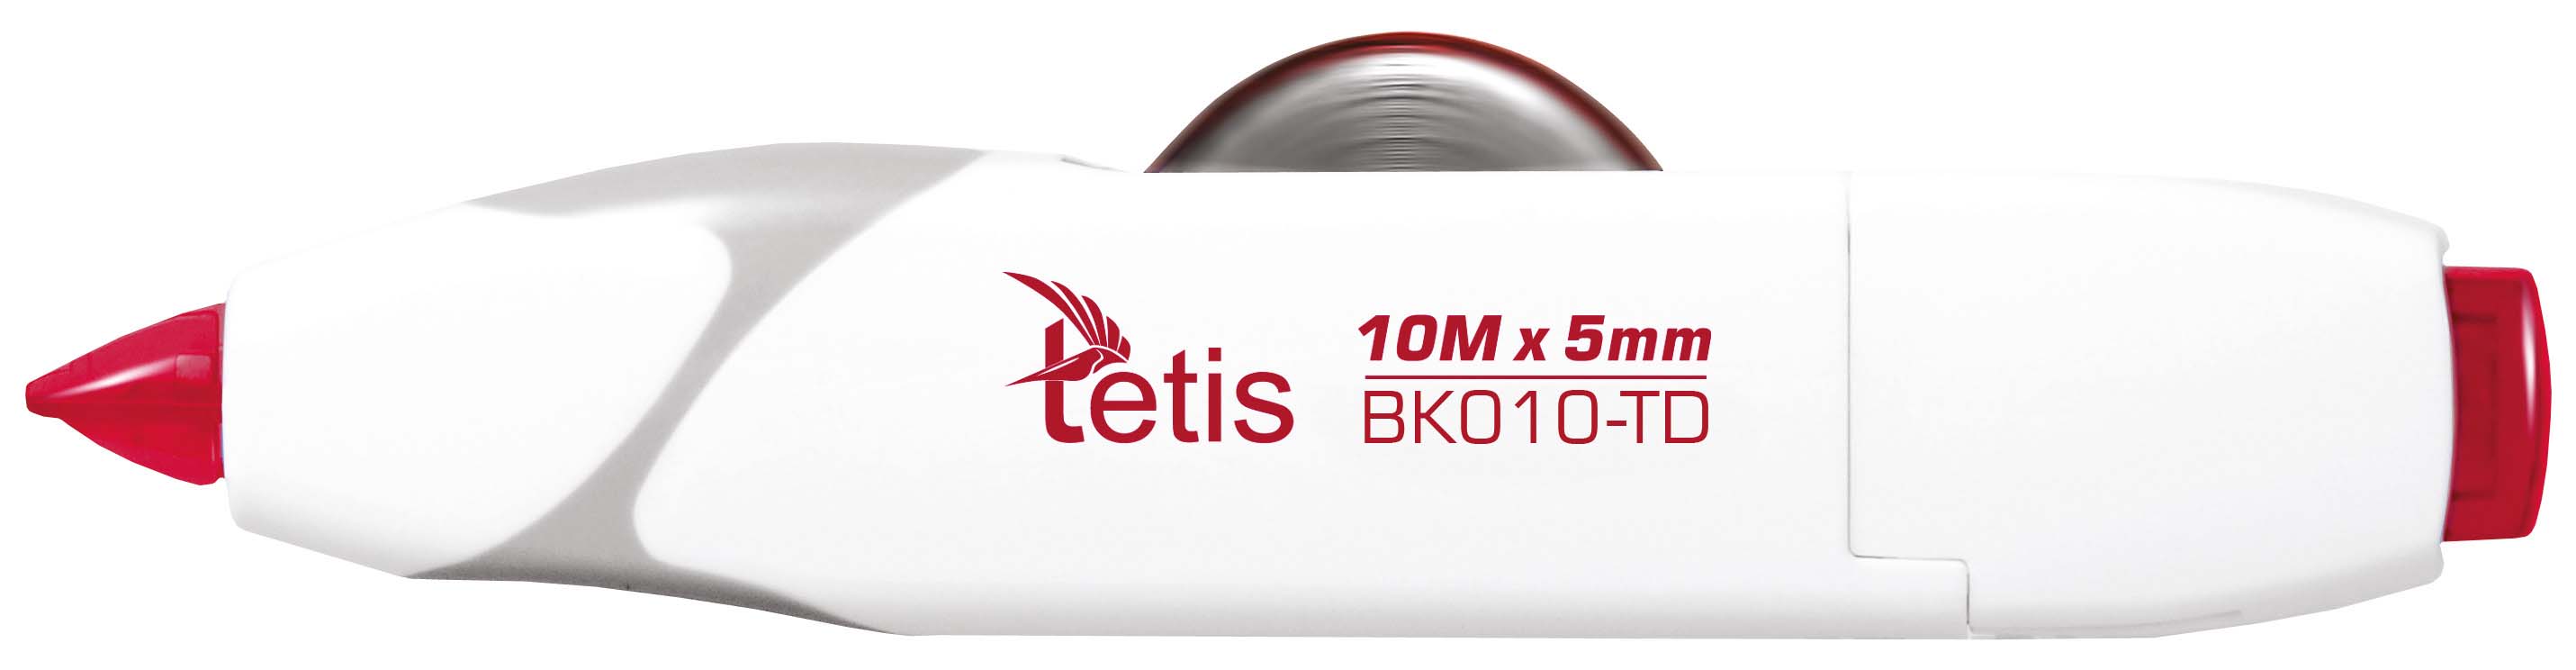 Korektor w taśmie 5mmx10m BK010-TD Tetis